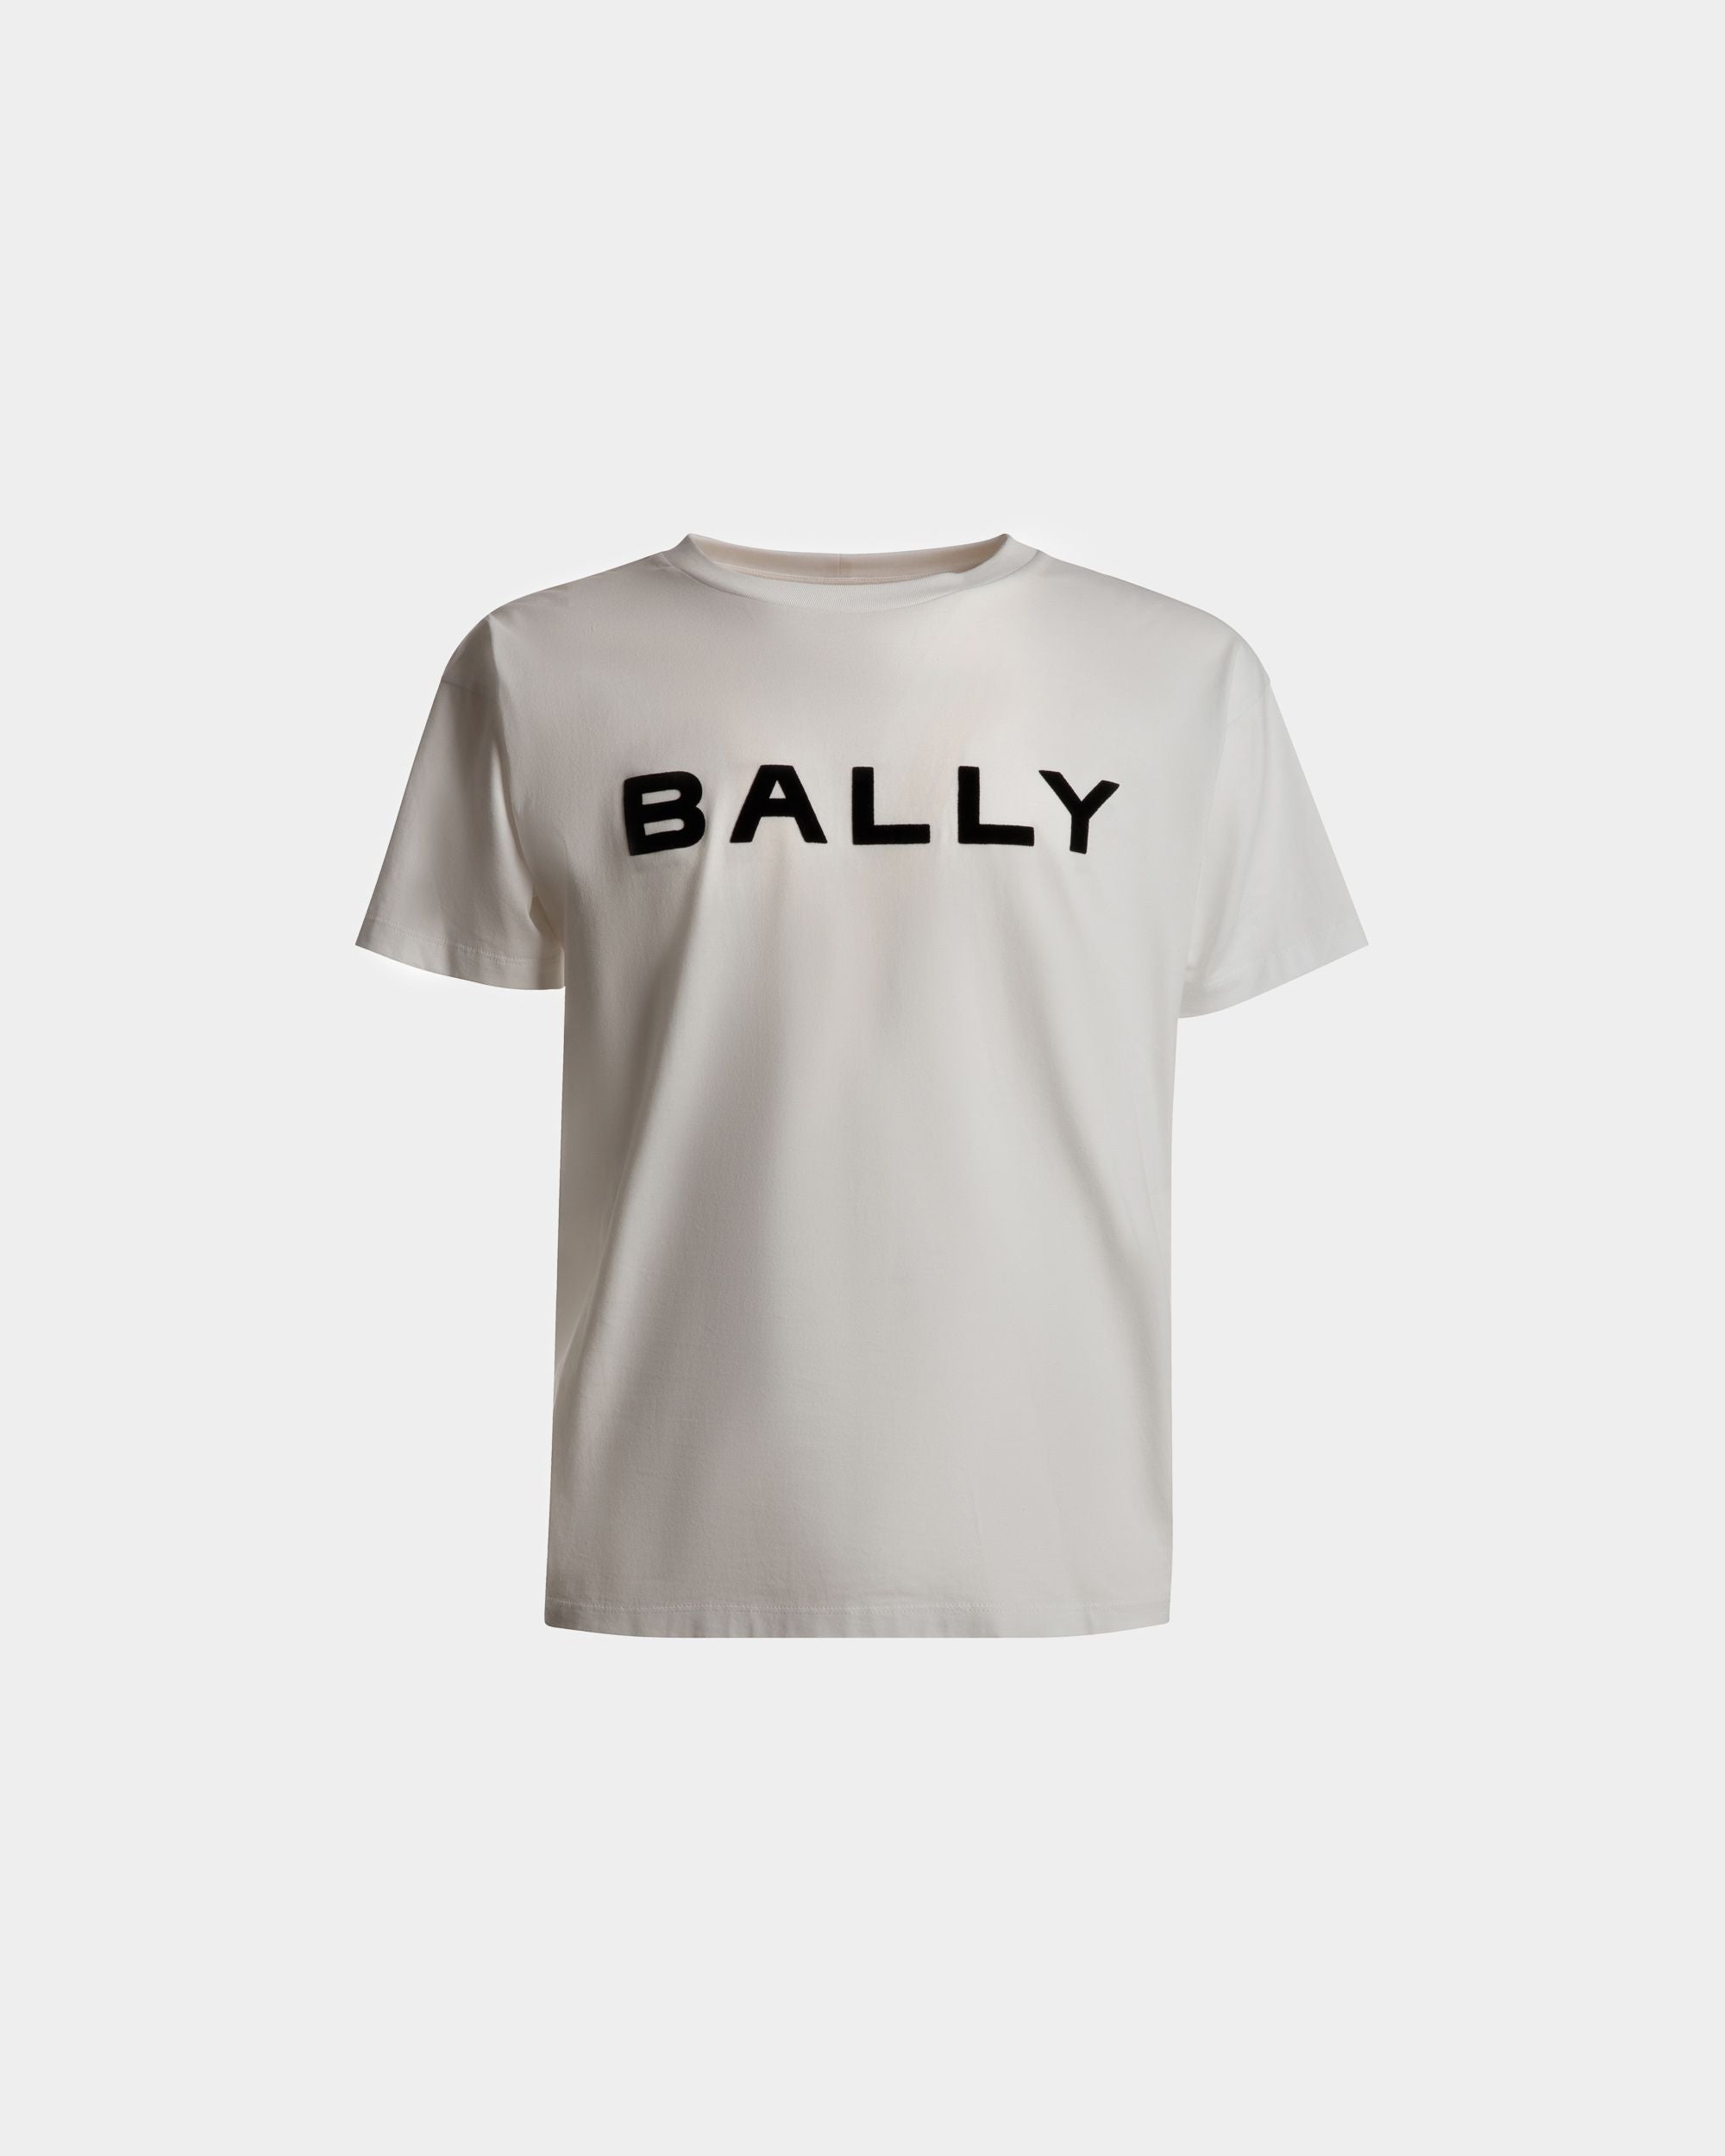 T-Shirt mit Logo | T-Shirt für Herren | Weiße Baumwolle | Bally | Still Life Vorderseite